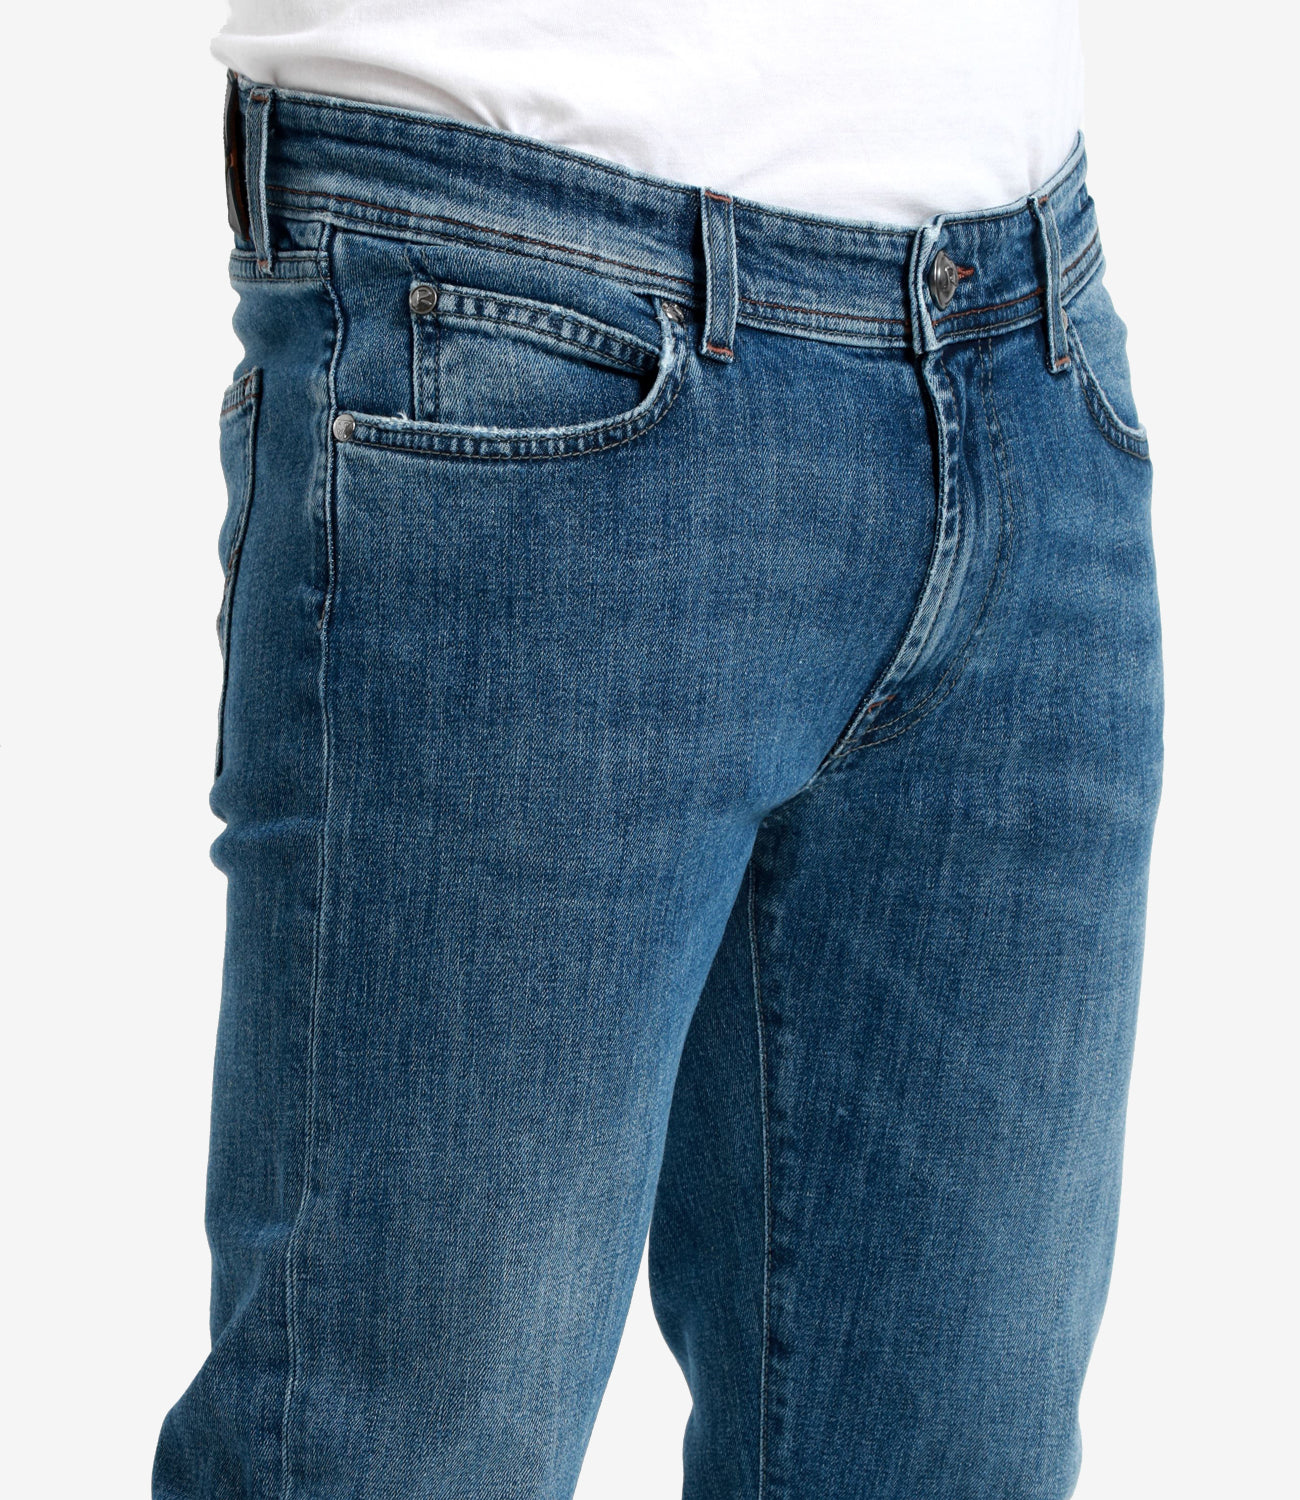 Roy Roger's | Jeans 517 Festival Denim Medium